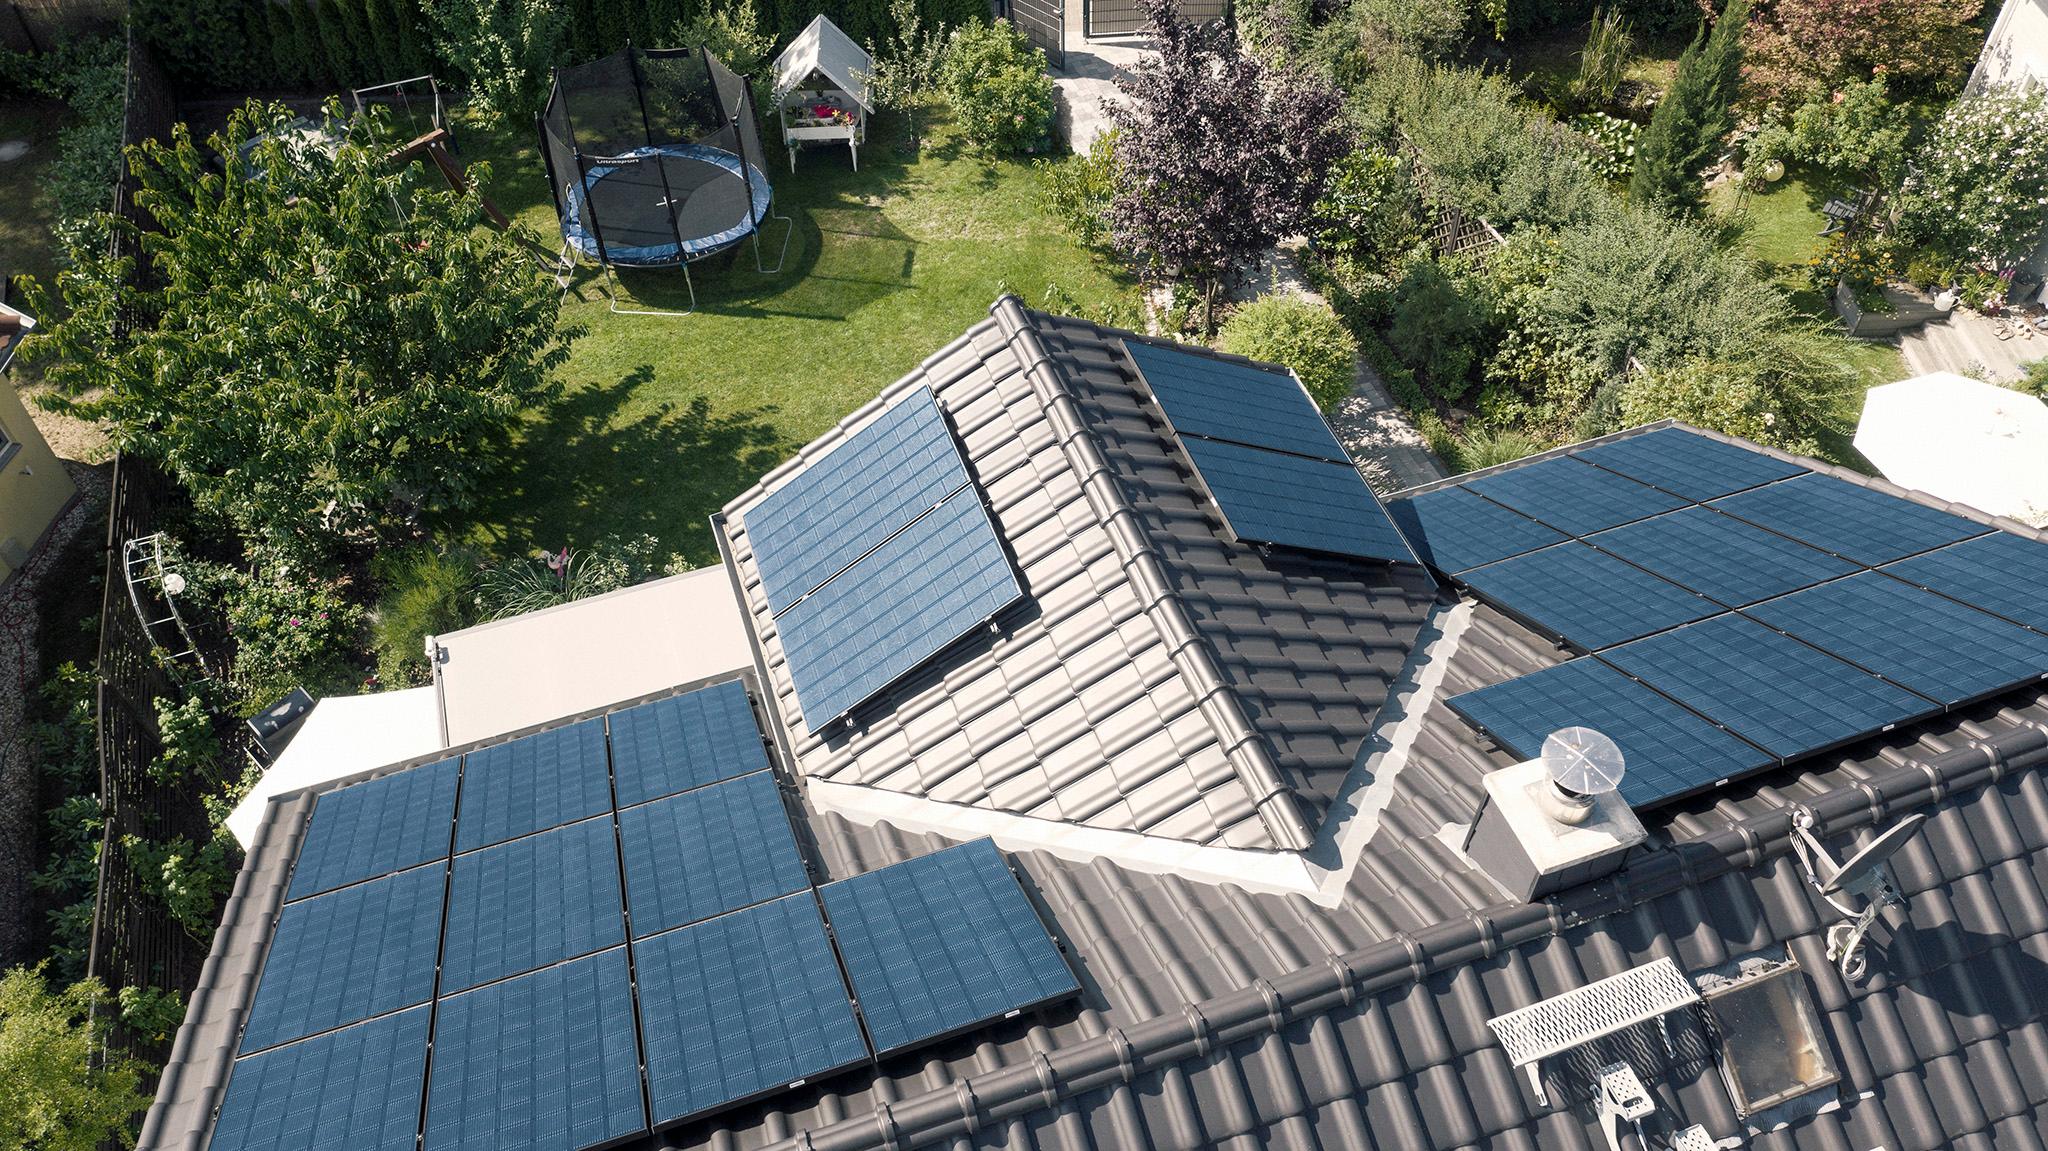 Solaranlage auf dem Dach mit zolar - Solarboom 2022